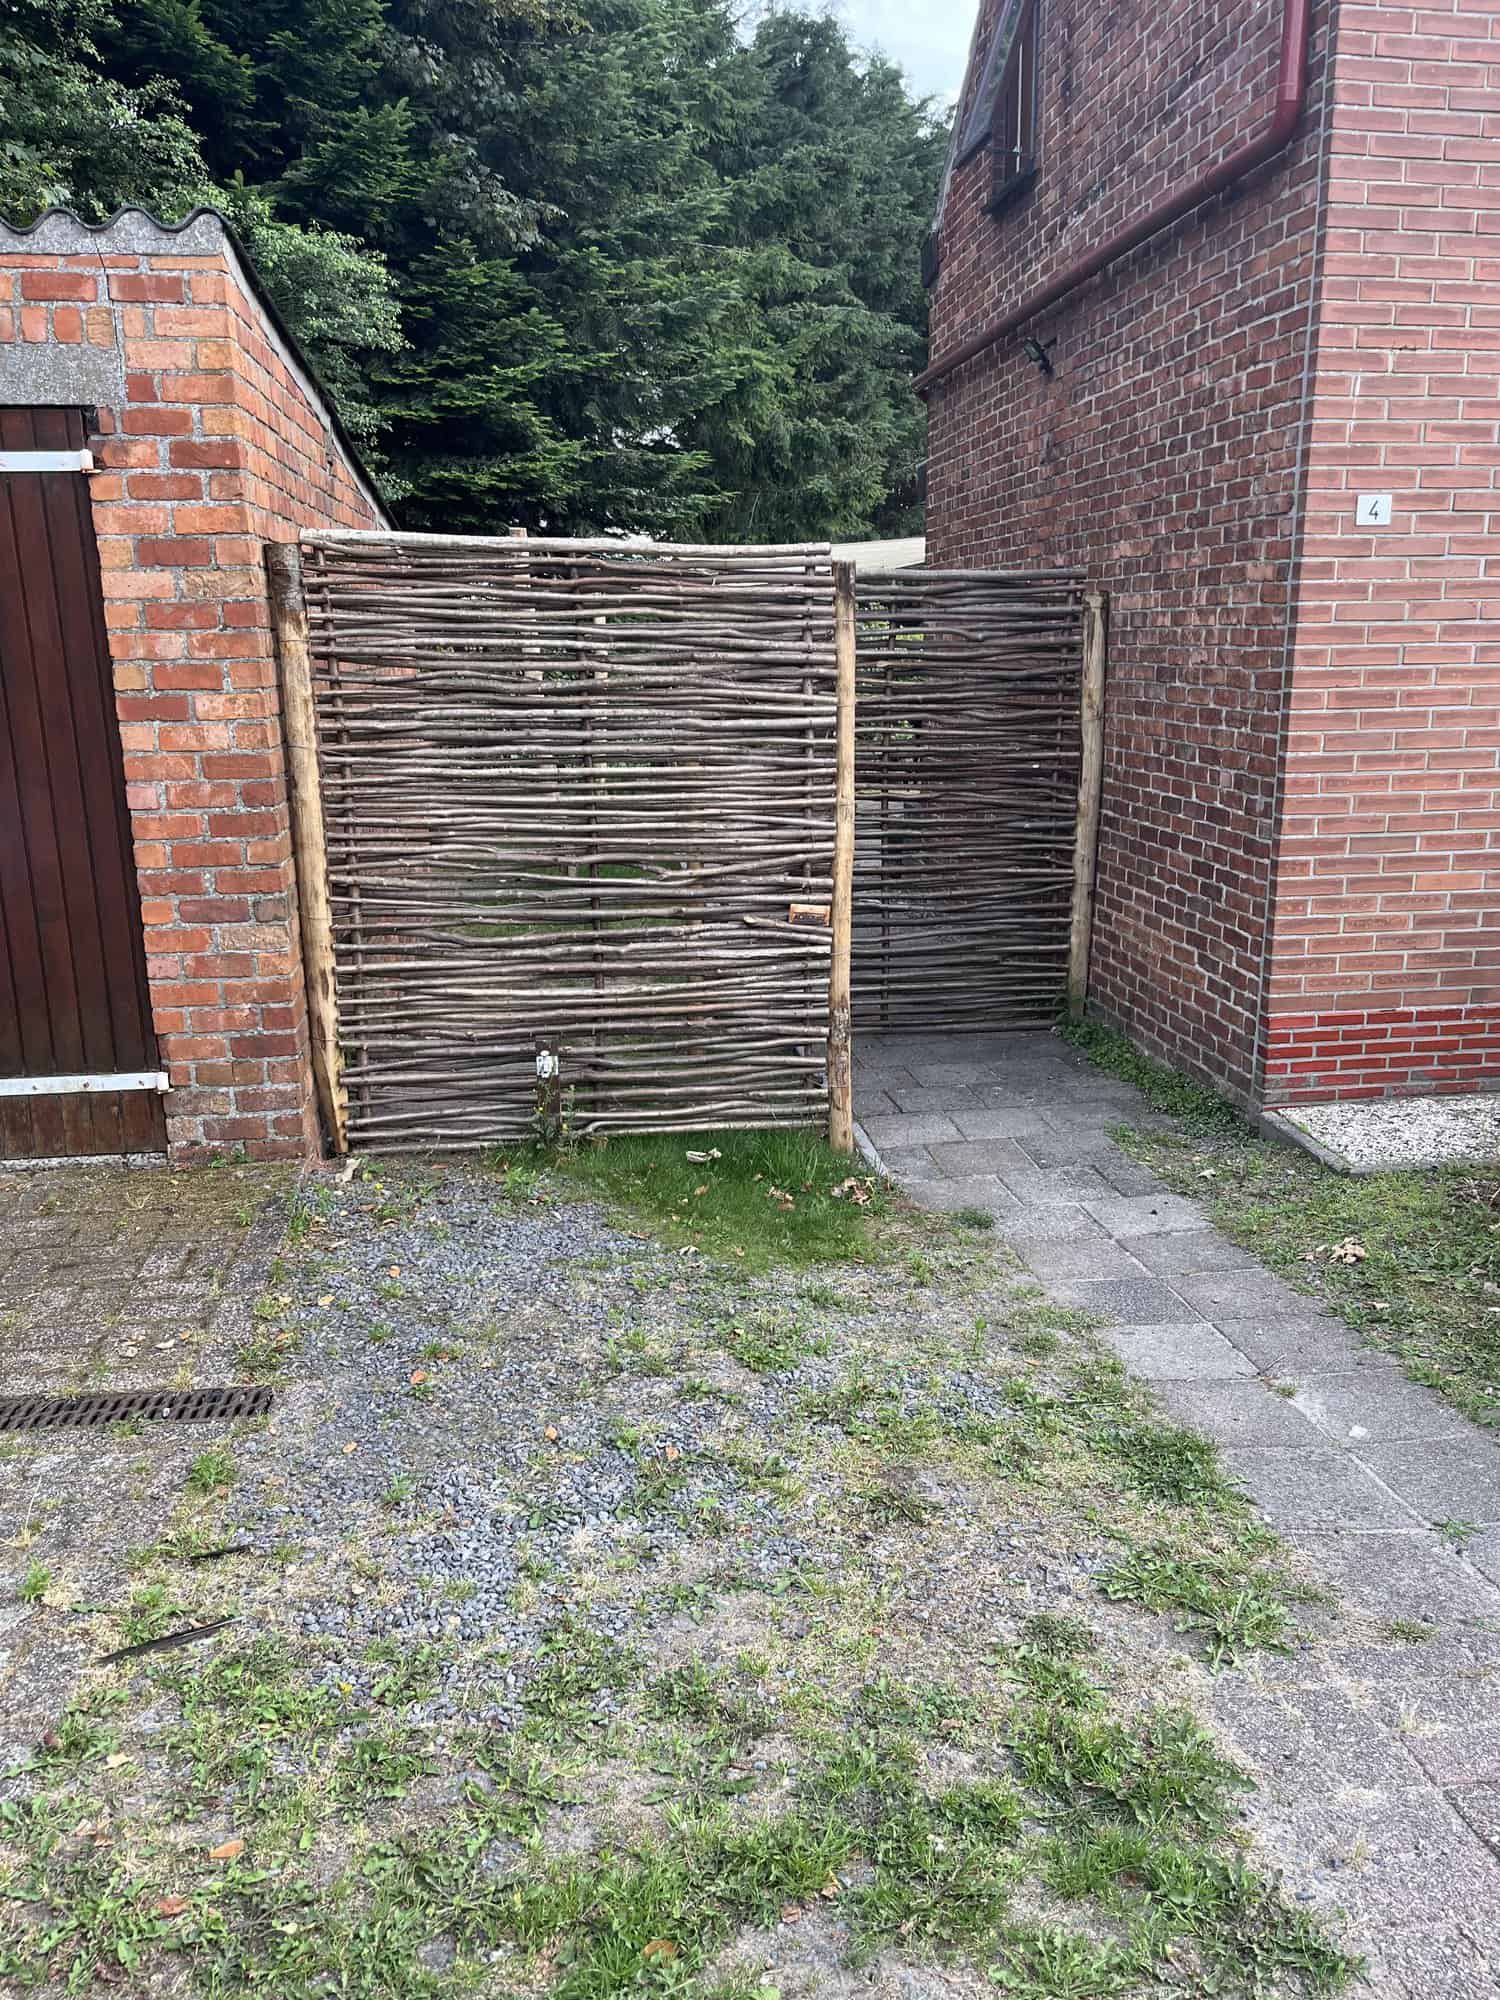 Haselnuss Zaun Somme 1 in der Größe 150 cm breit und 180 cm hoch als kreativer Zaun zwischen Haus und Scheune.